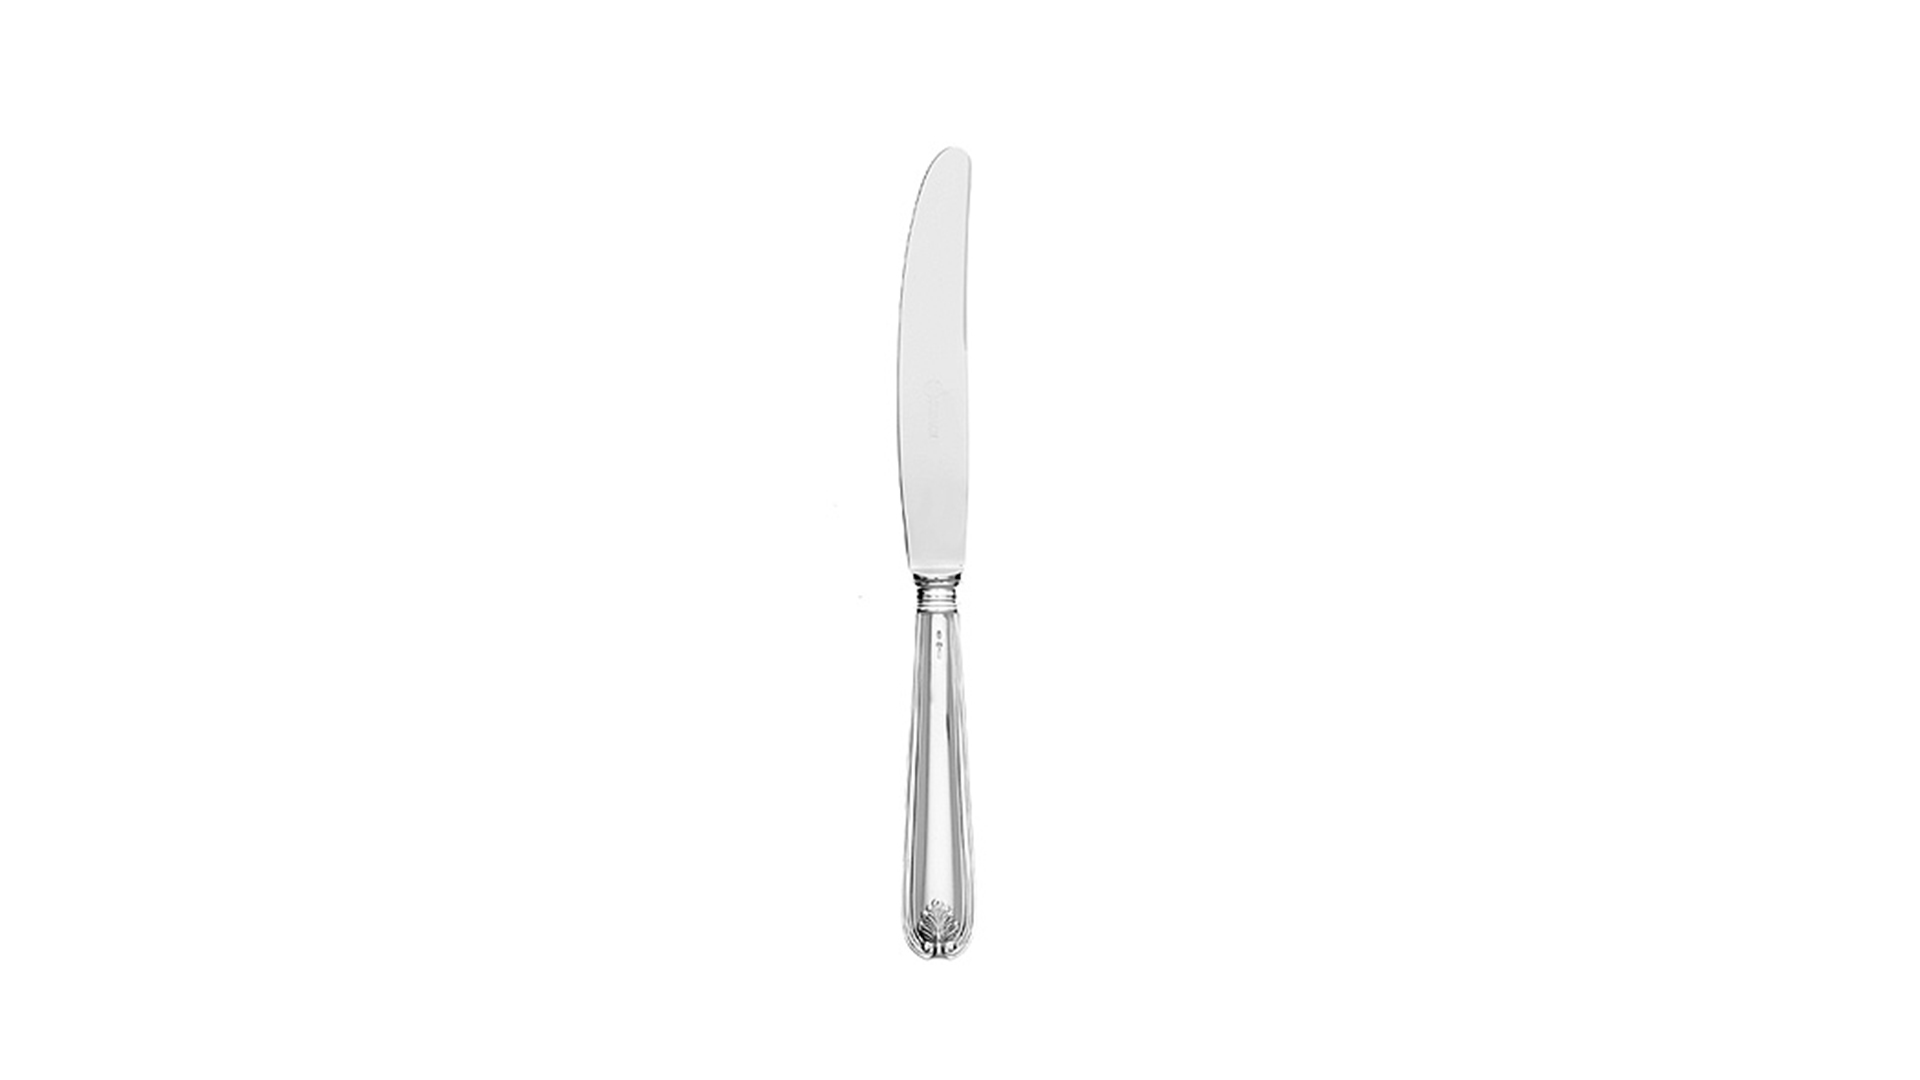 Нож десертный 22 см Schiavon Фолья, серебро 925пр